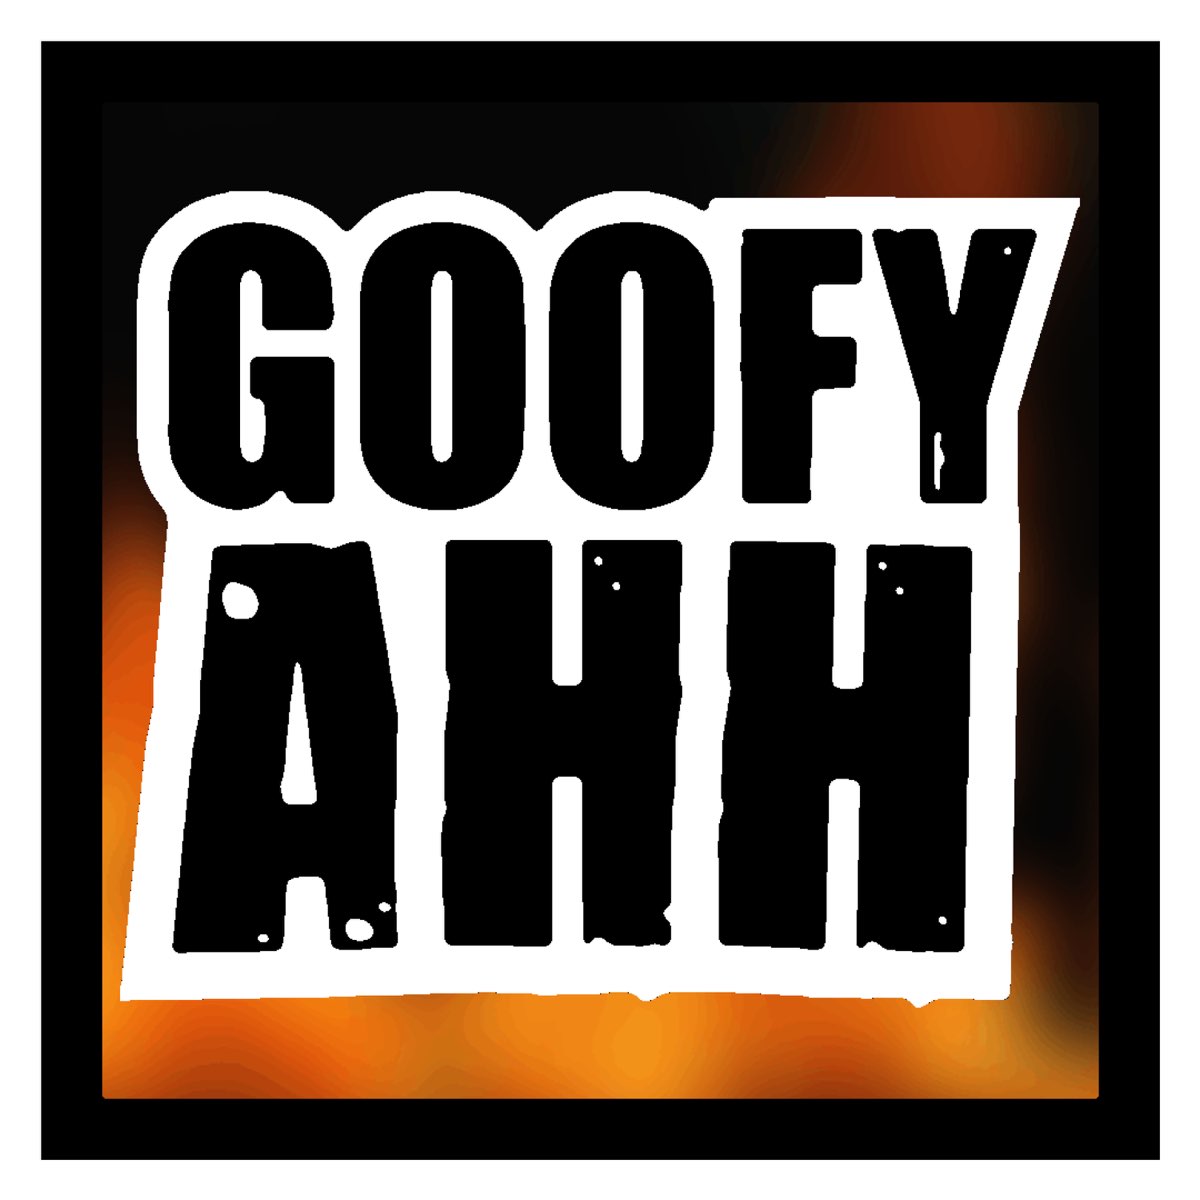 Goofy Ahh - Single - Album by goofy ahh - Apple Music